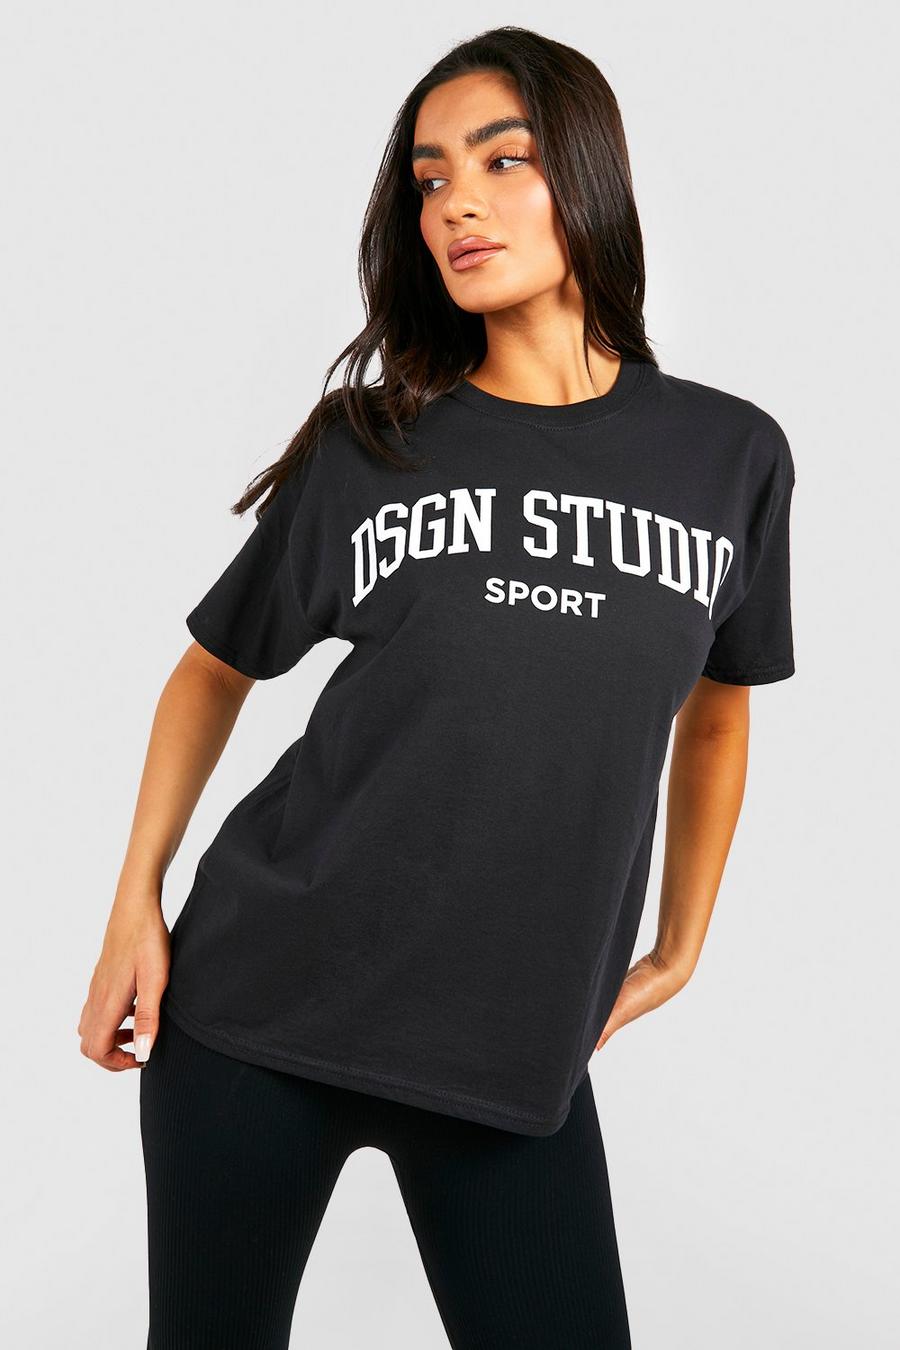 Black Oversized Dsgn Studio Sport T-Shirt Met Tekst